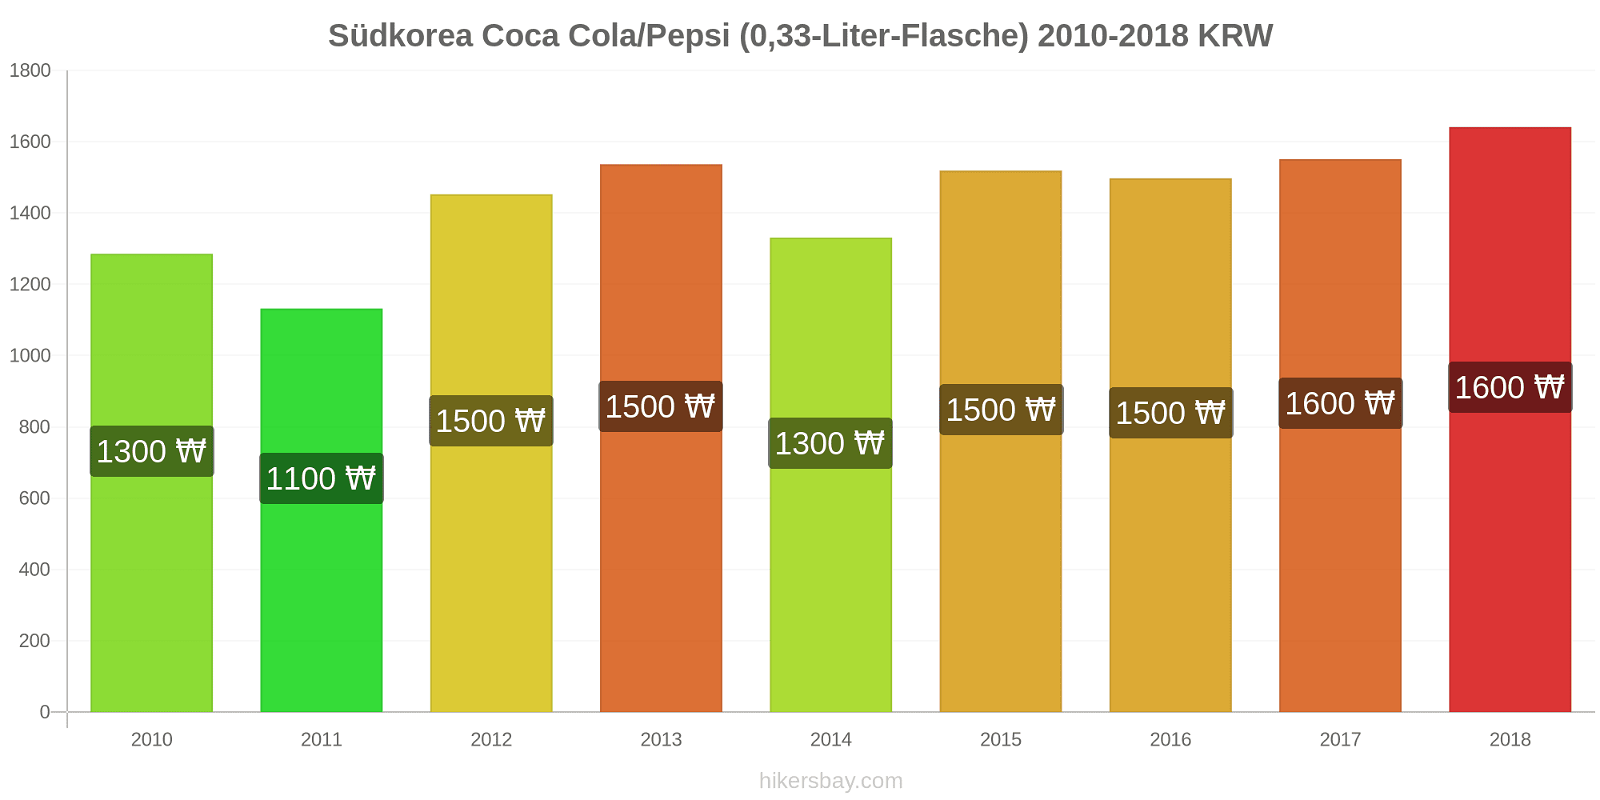 Südkorea Preisänderungen Coke/Pepsi (0,33-Liter-Flasche) hikersbay.com